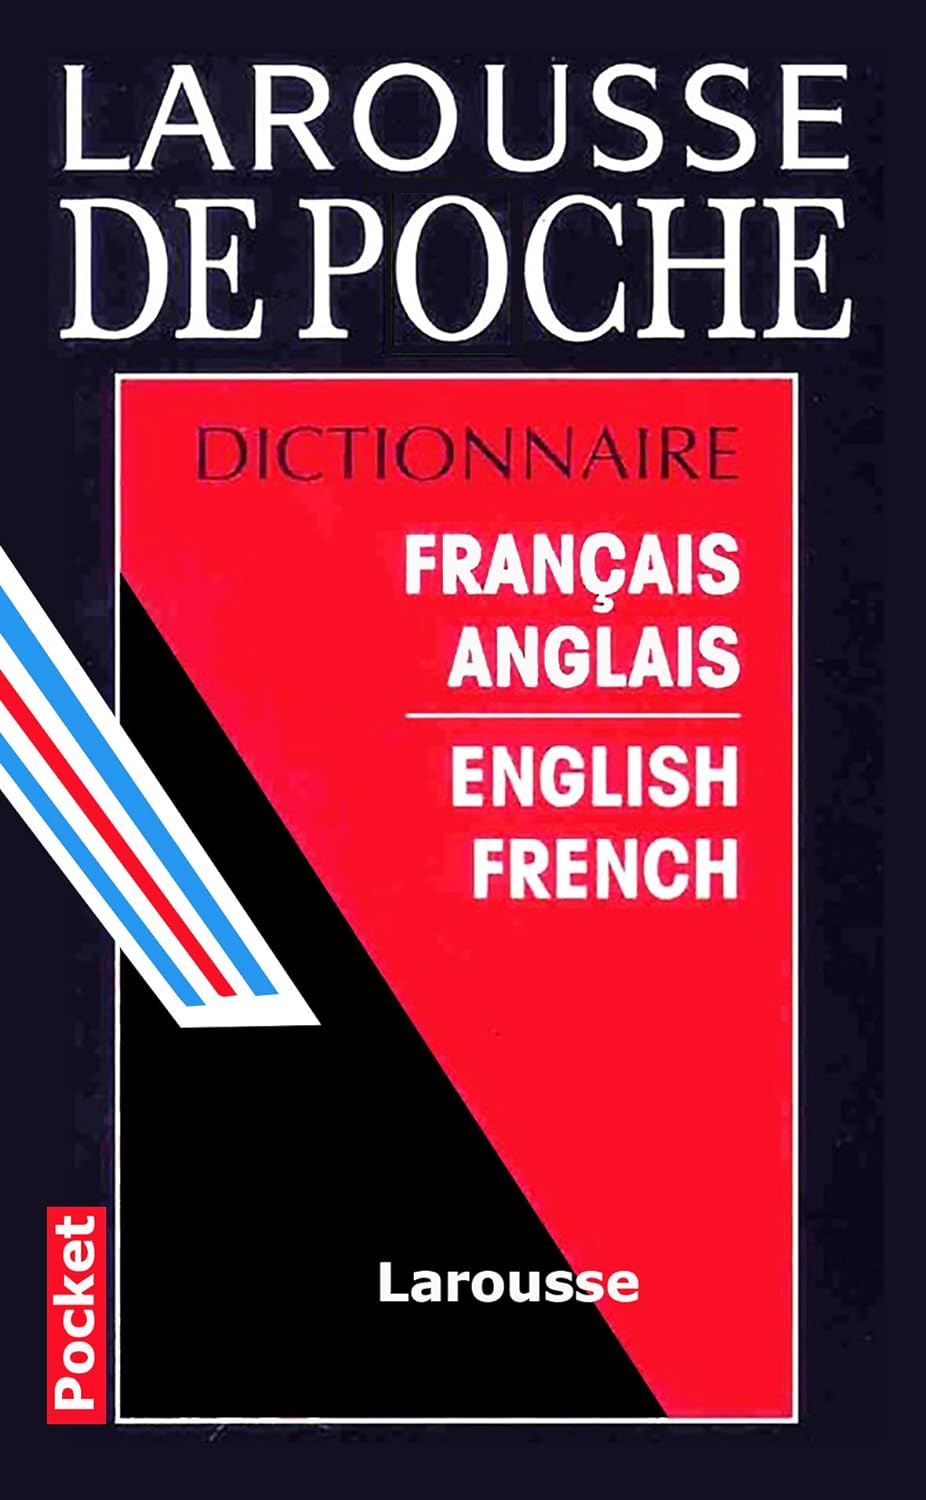 Larousse de poche : Dictionnaire français-anglais anglais-français